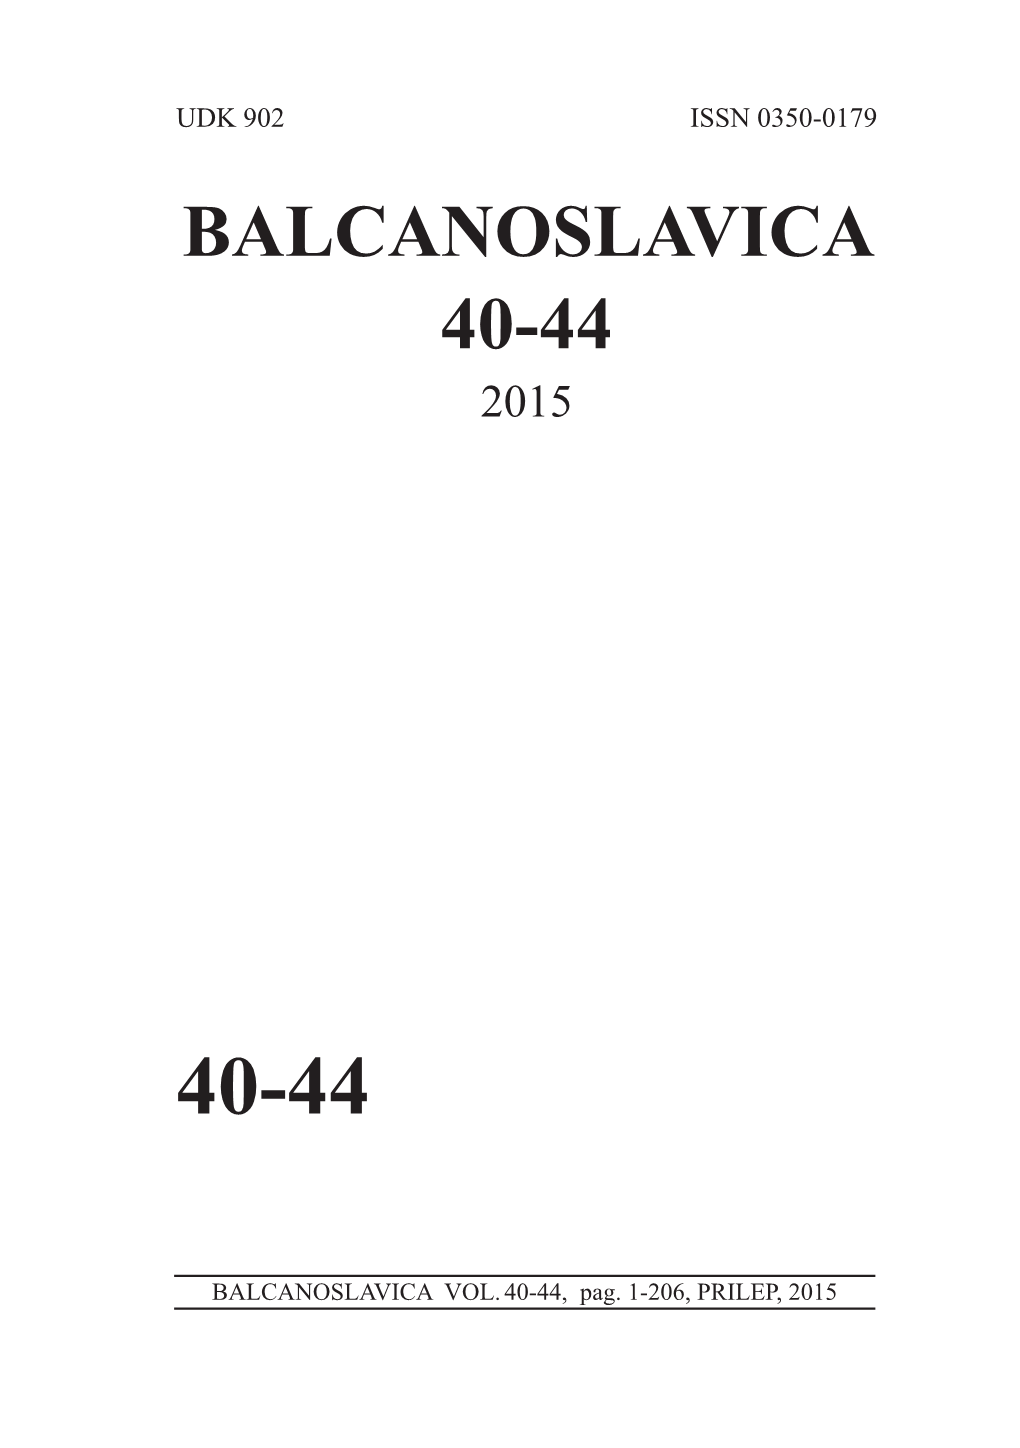 Balcanoslavica 40-44 2015